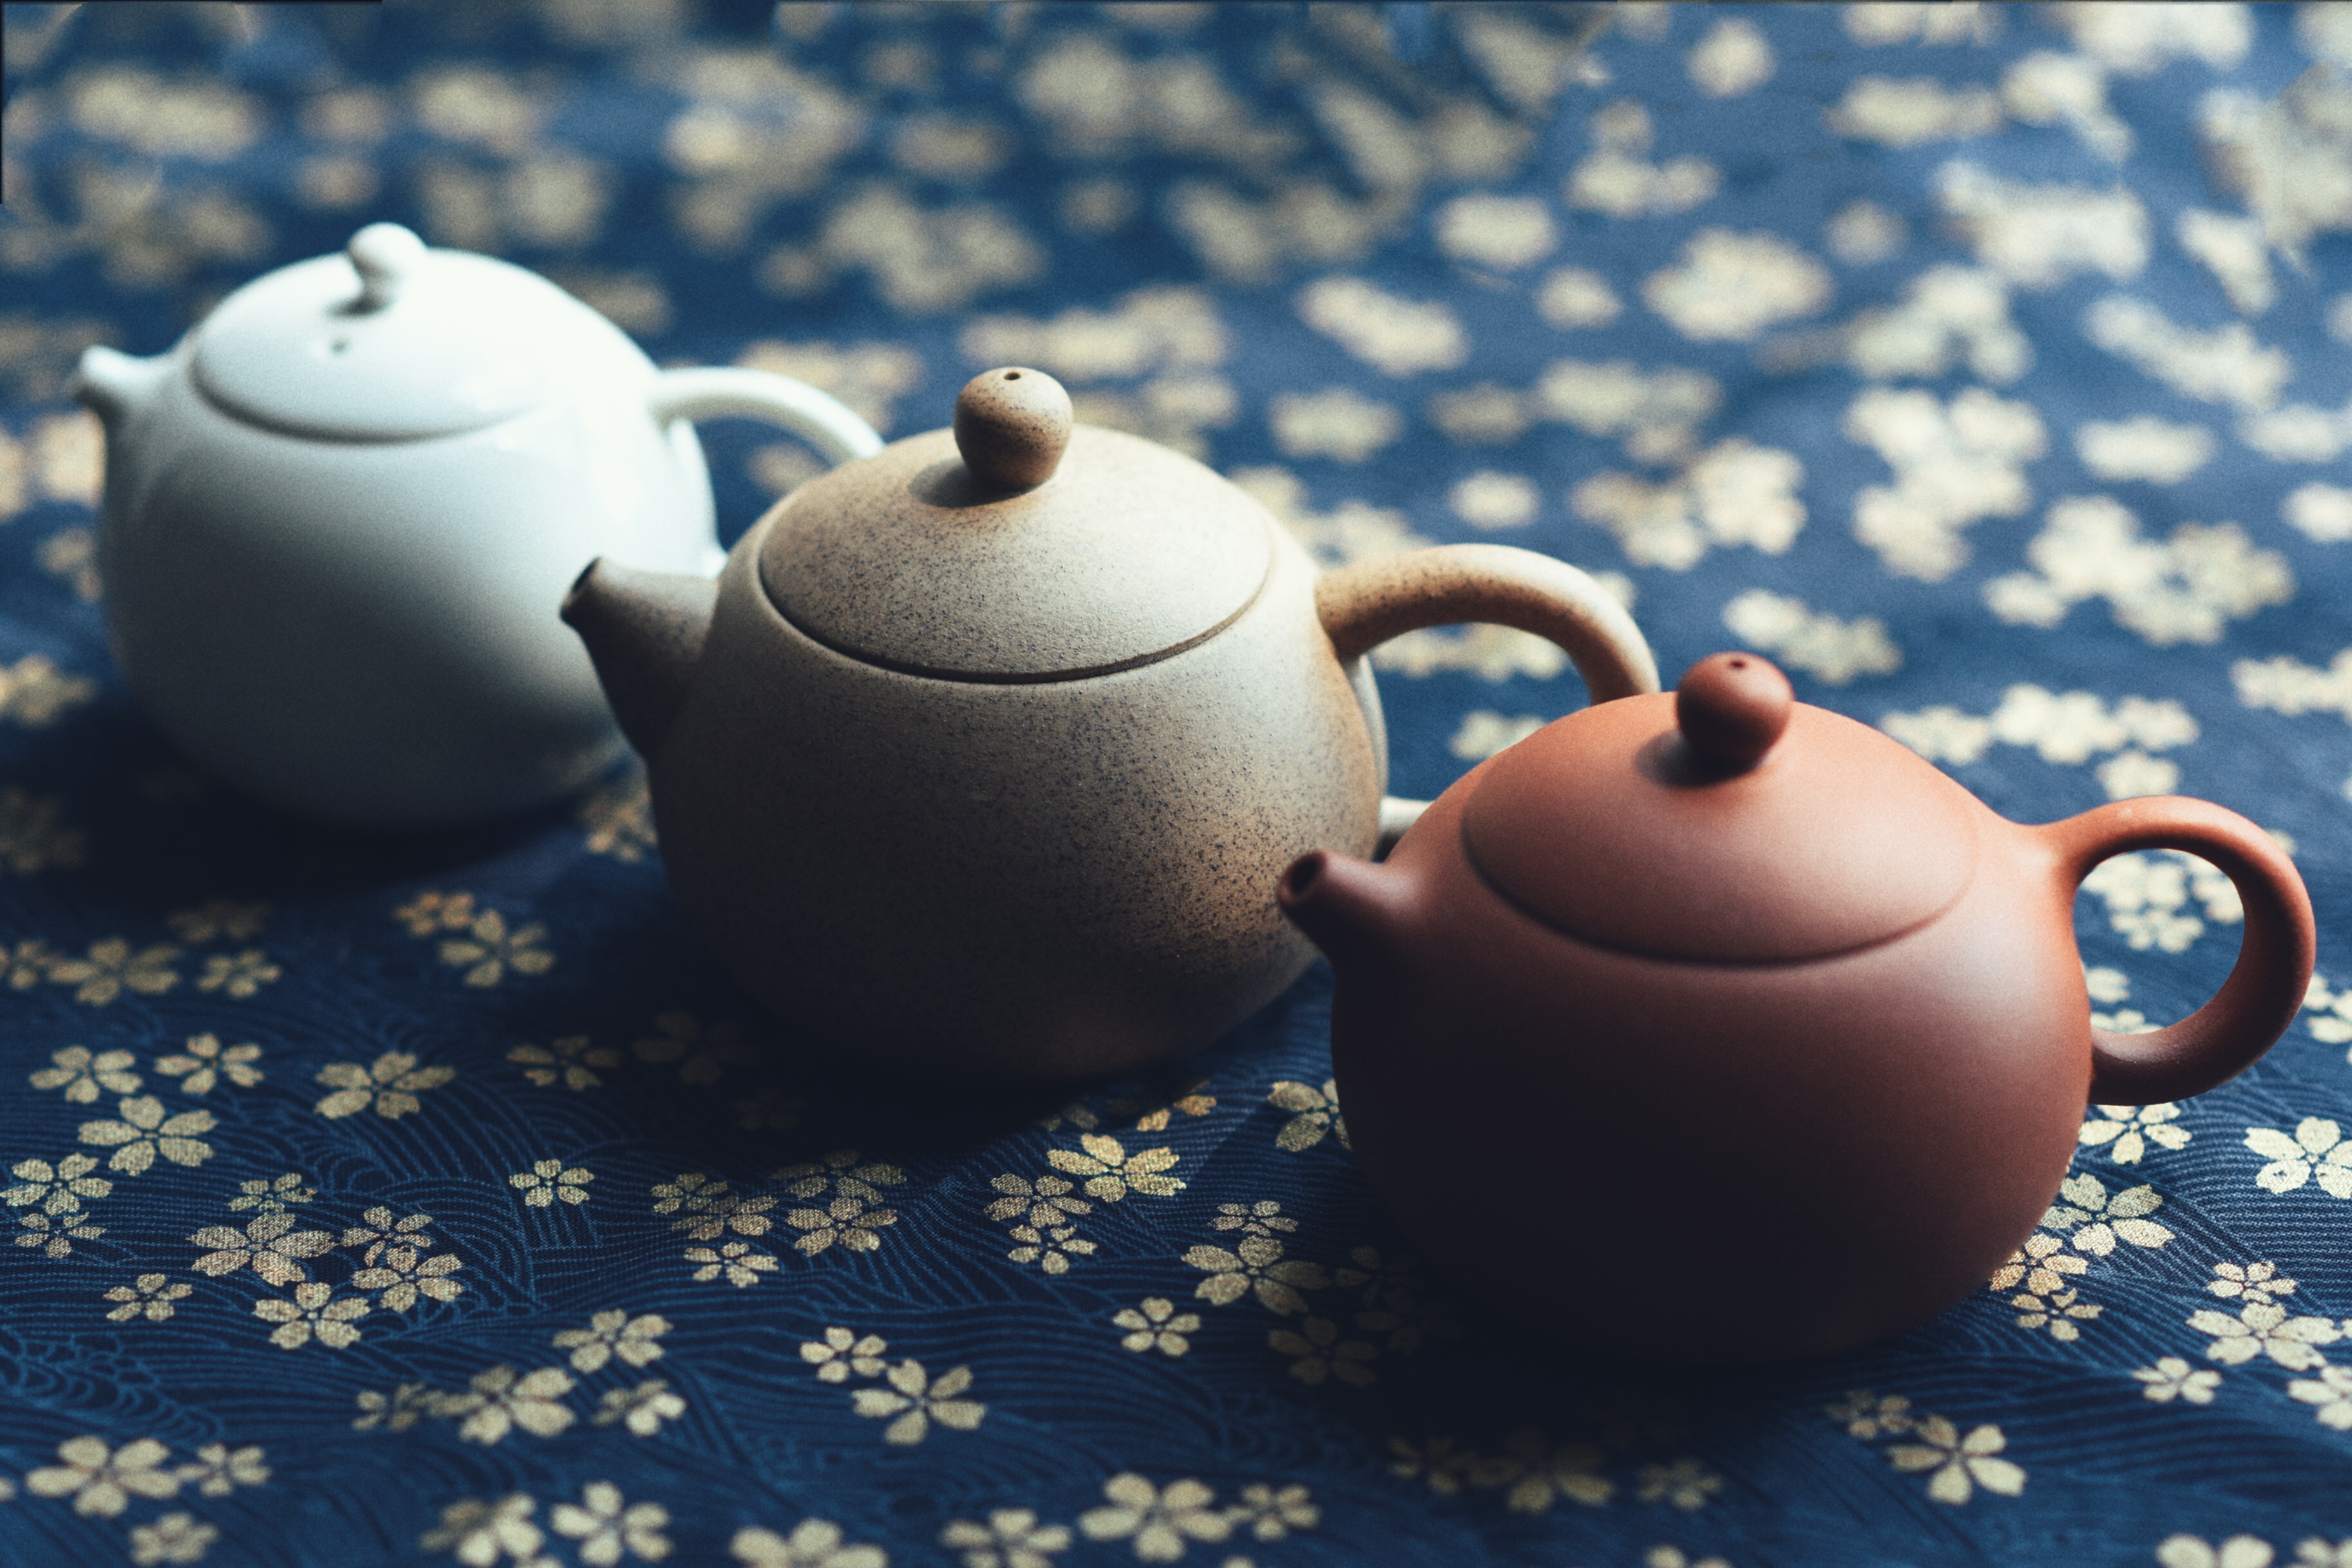 三只陶瓷茶壶立在蓝色花卉织物上